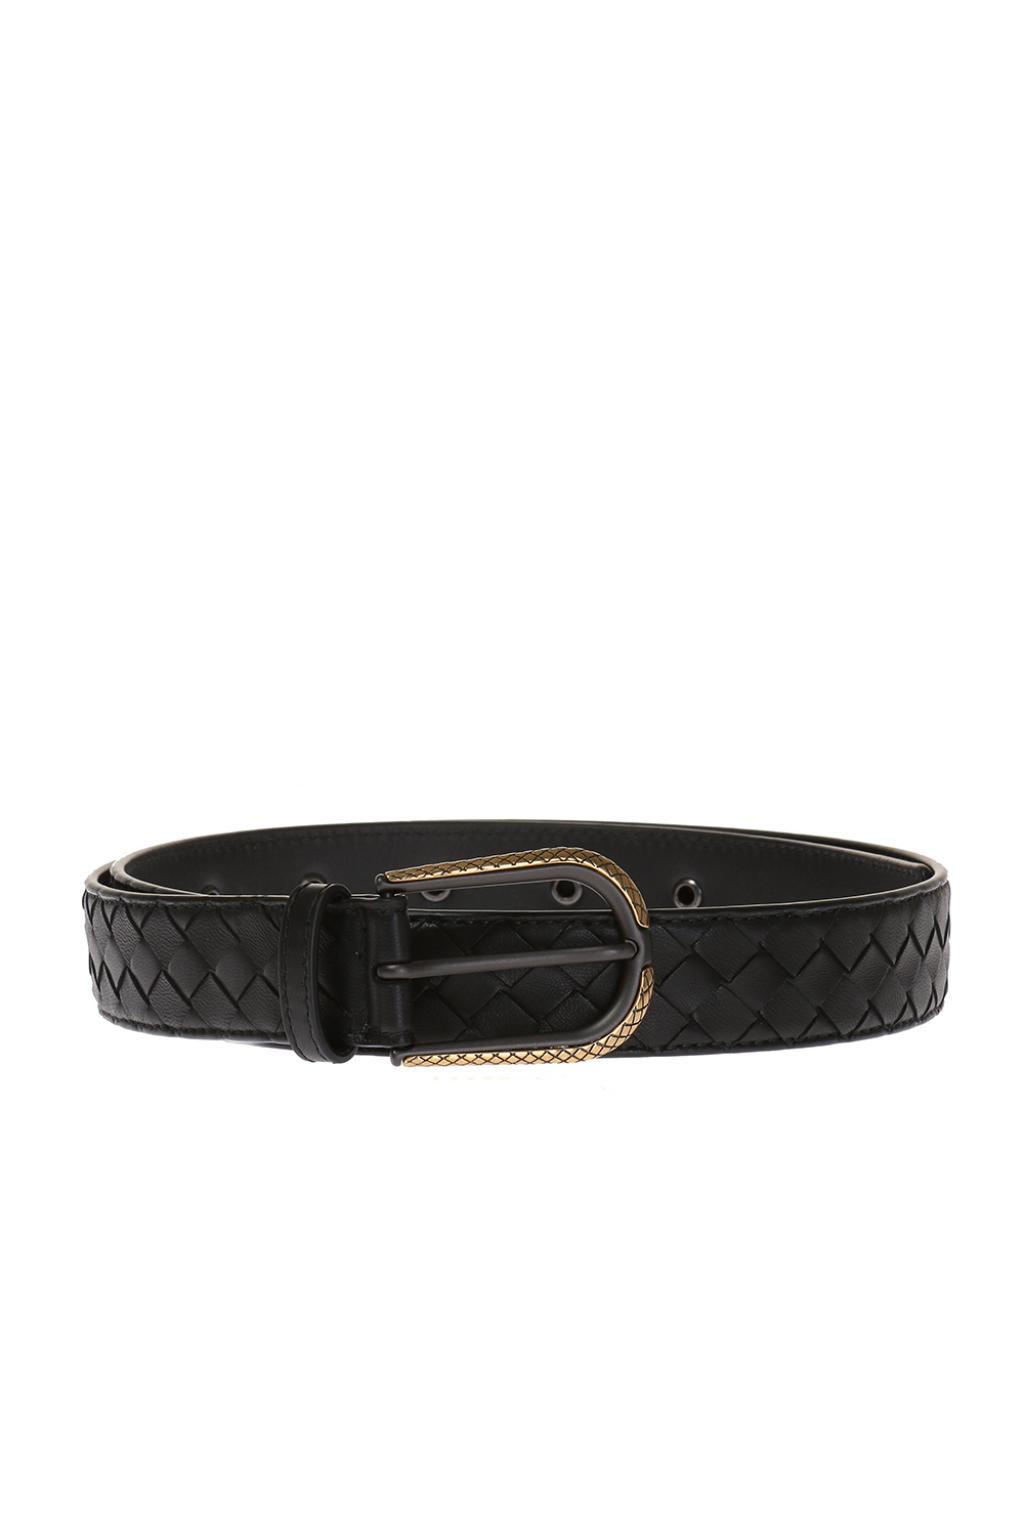 Bottega Veneta Leather Belt in Black for Men - Lyst